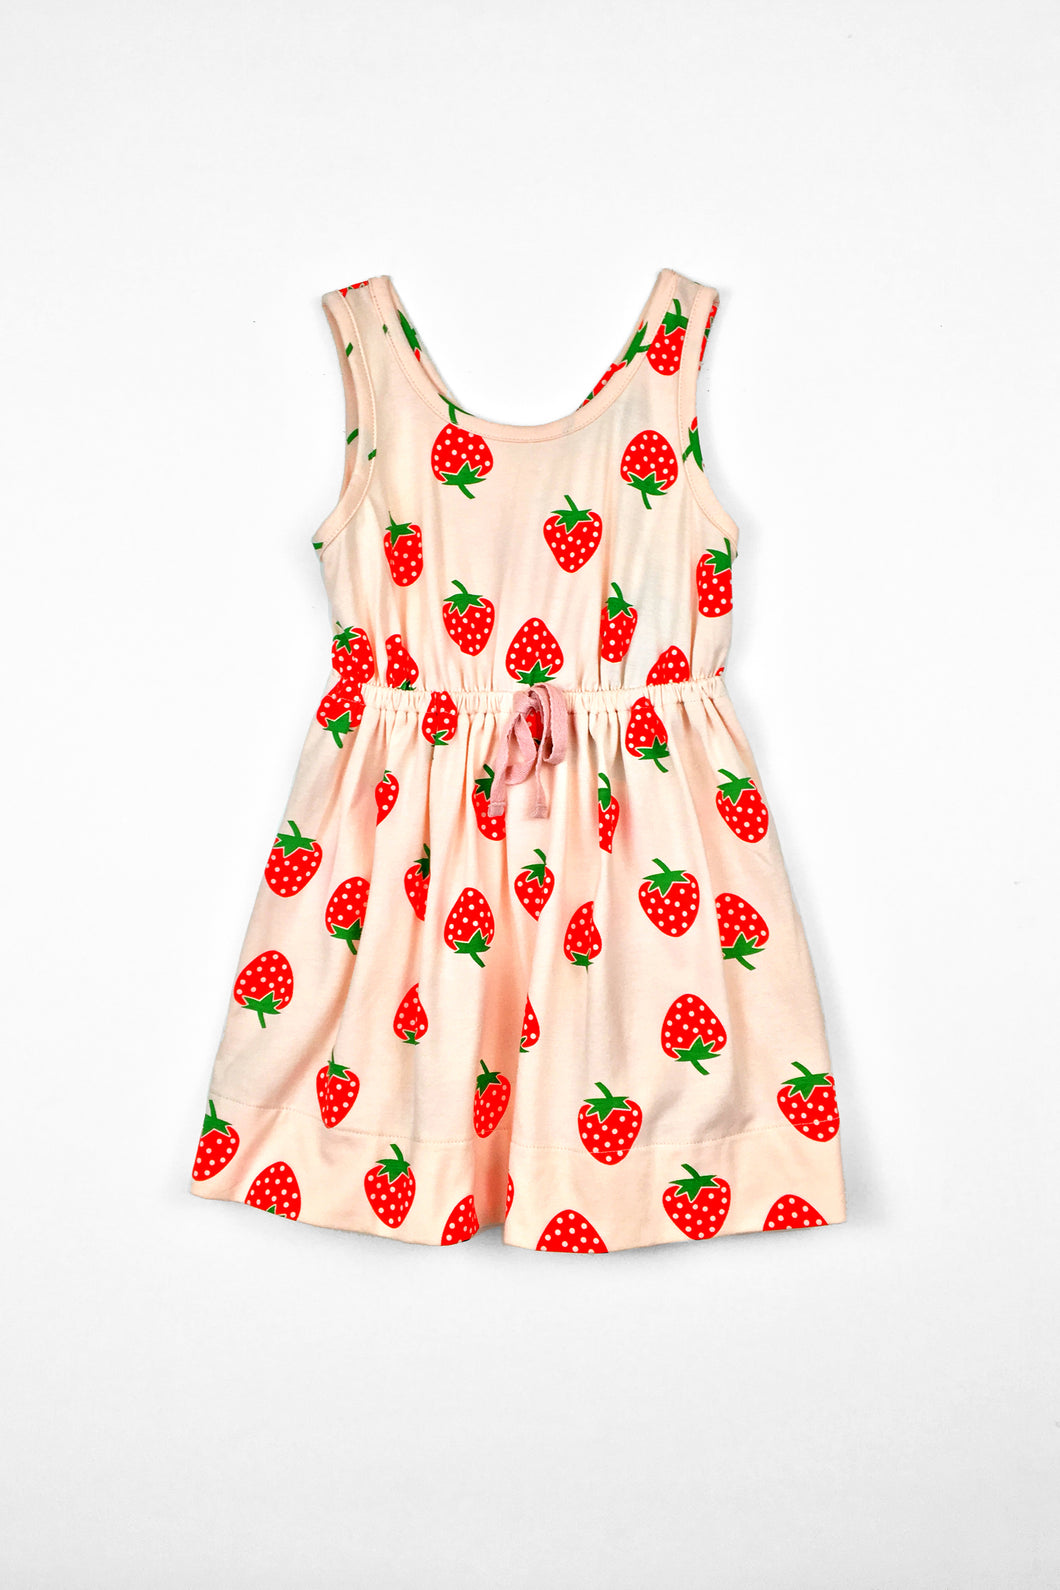 Strawberry fields dress